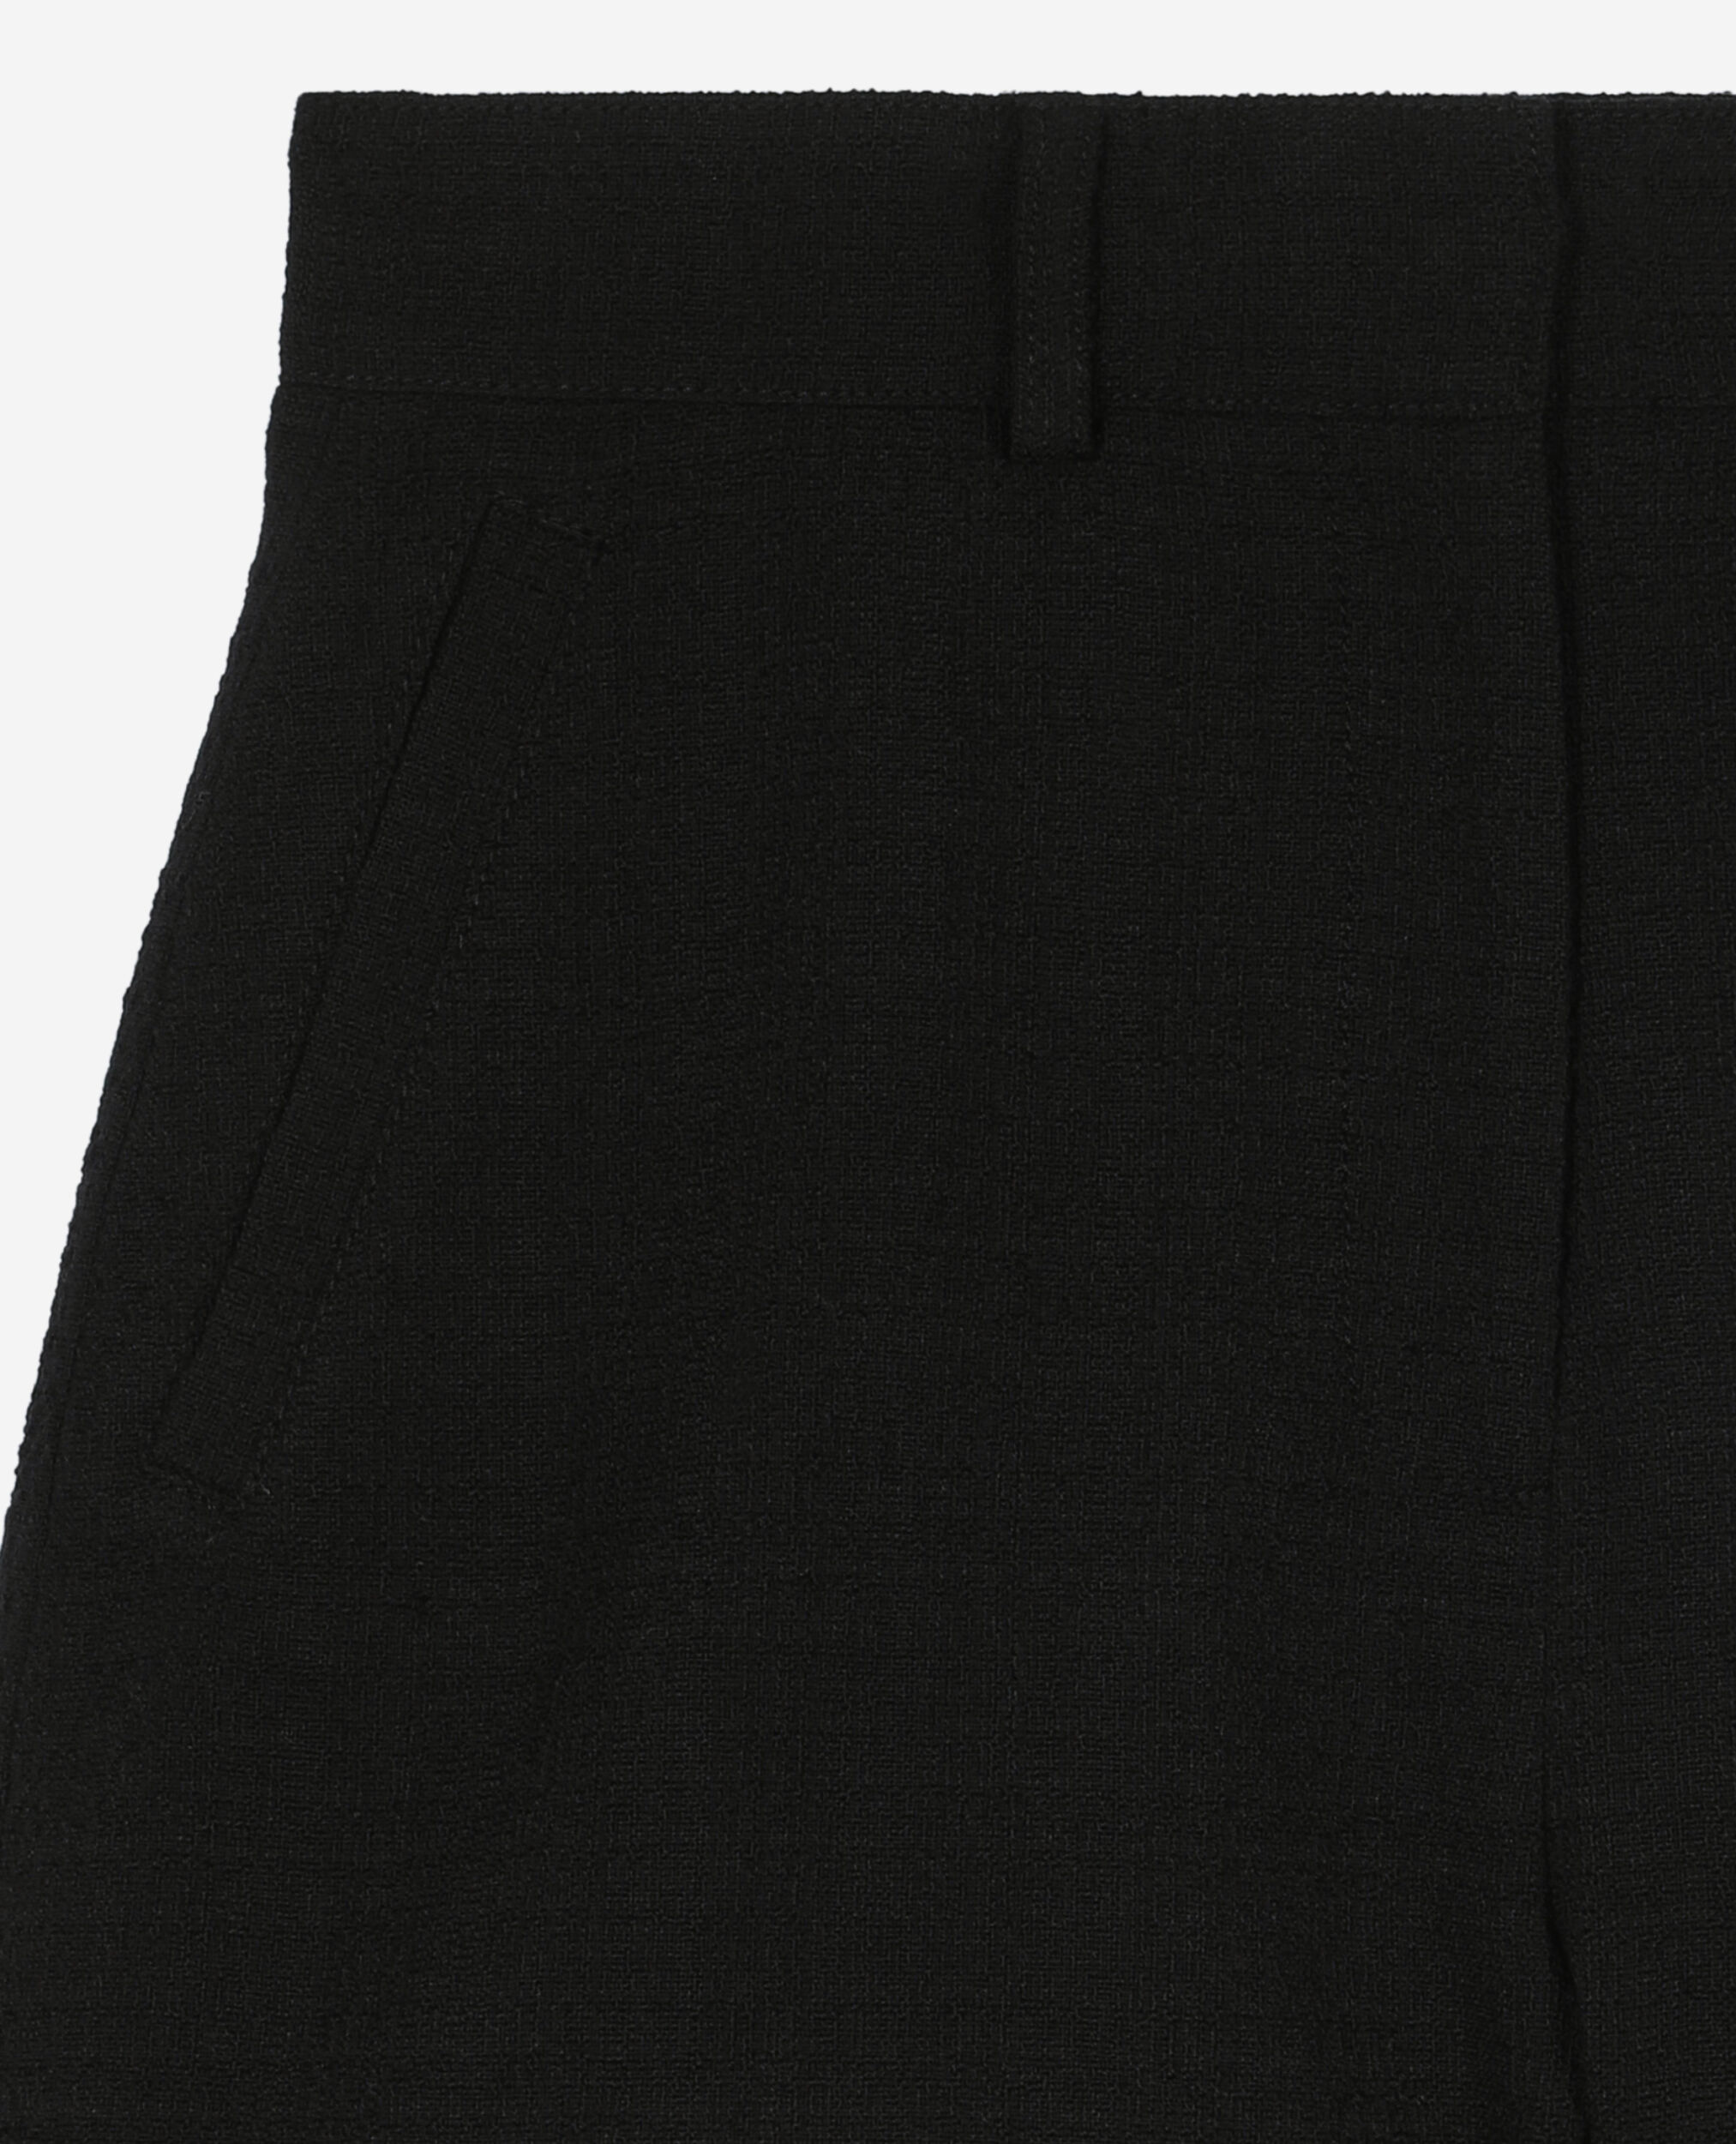 Pantalón corto de tweed negro, BLACK, hi-res image number null